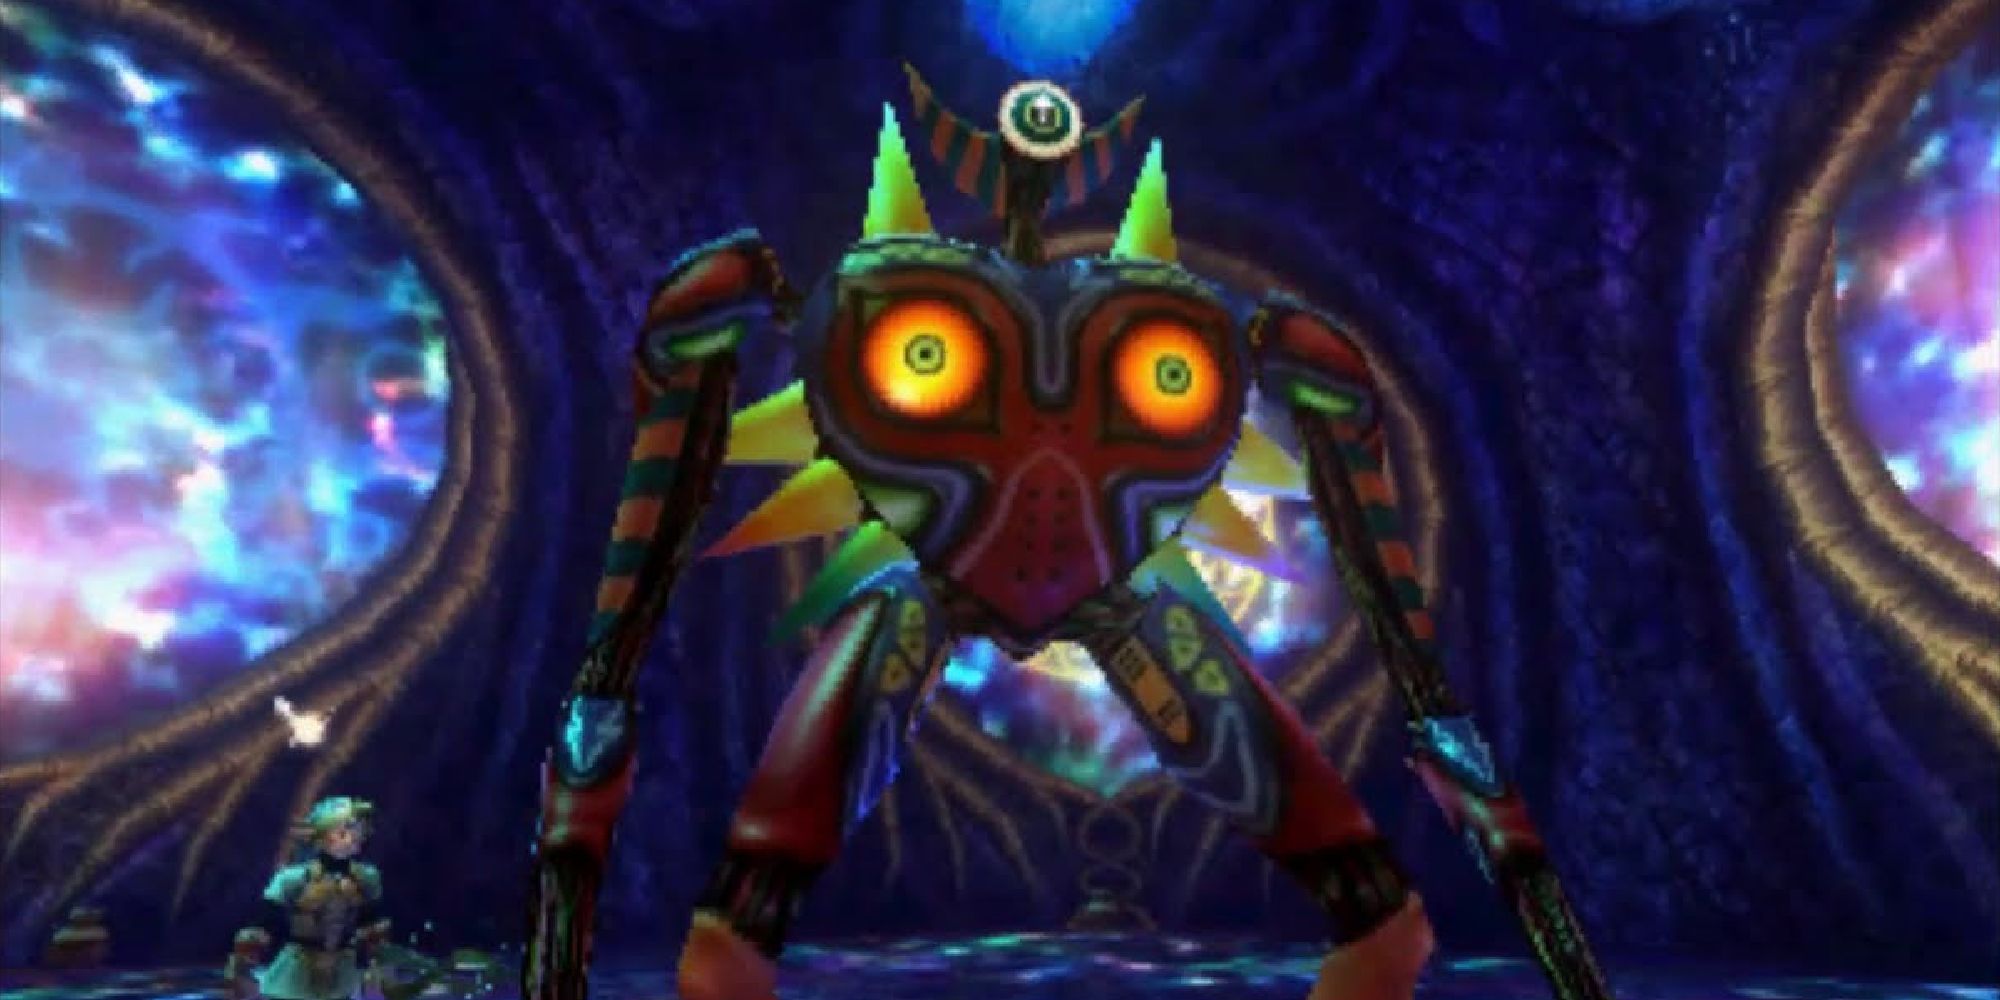 Majora's Mask appearing as the final boss against Fiercy Deity Link in Majora's Mask 3D